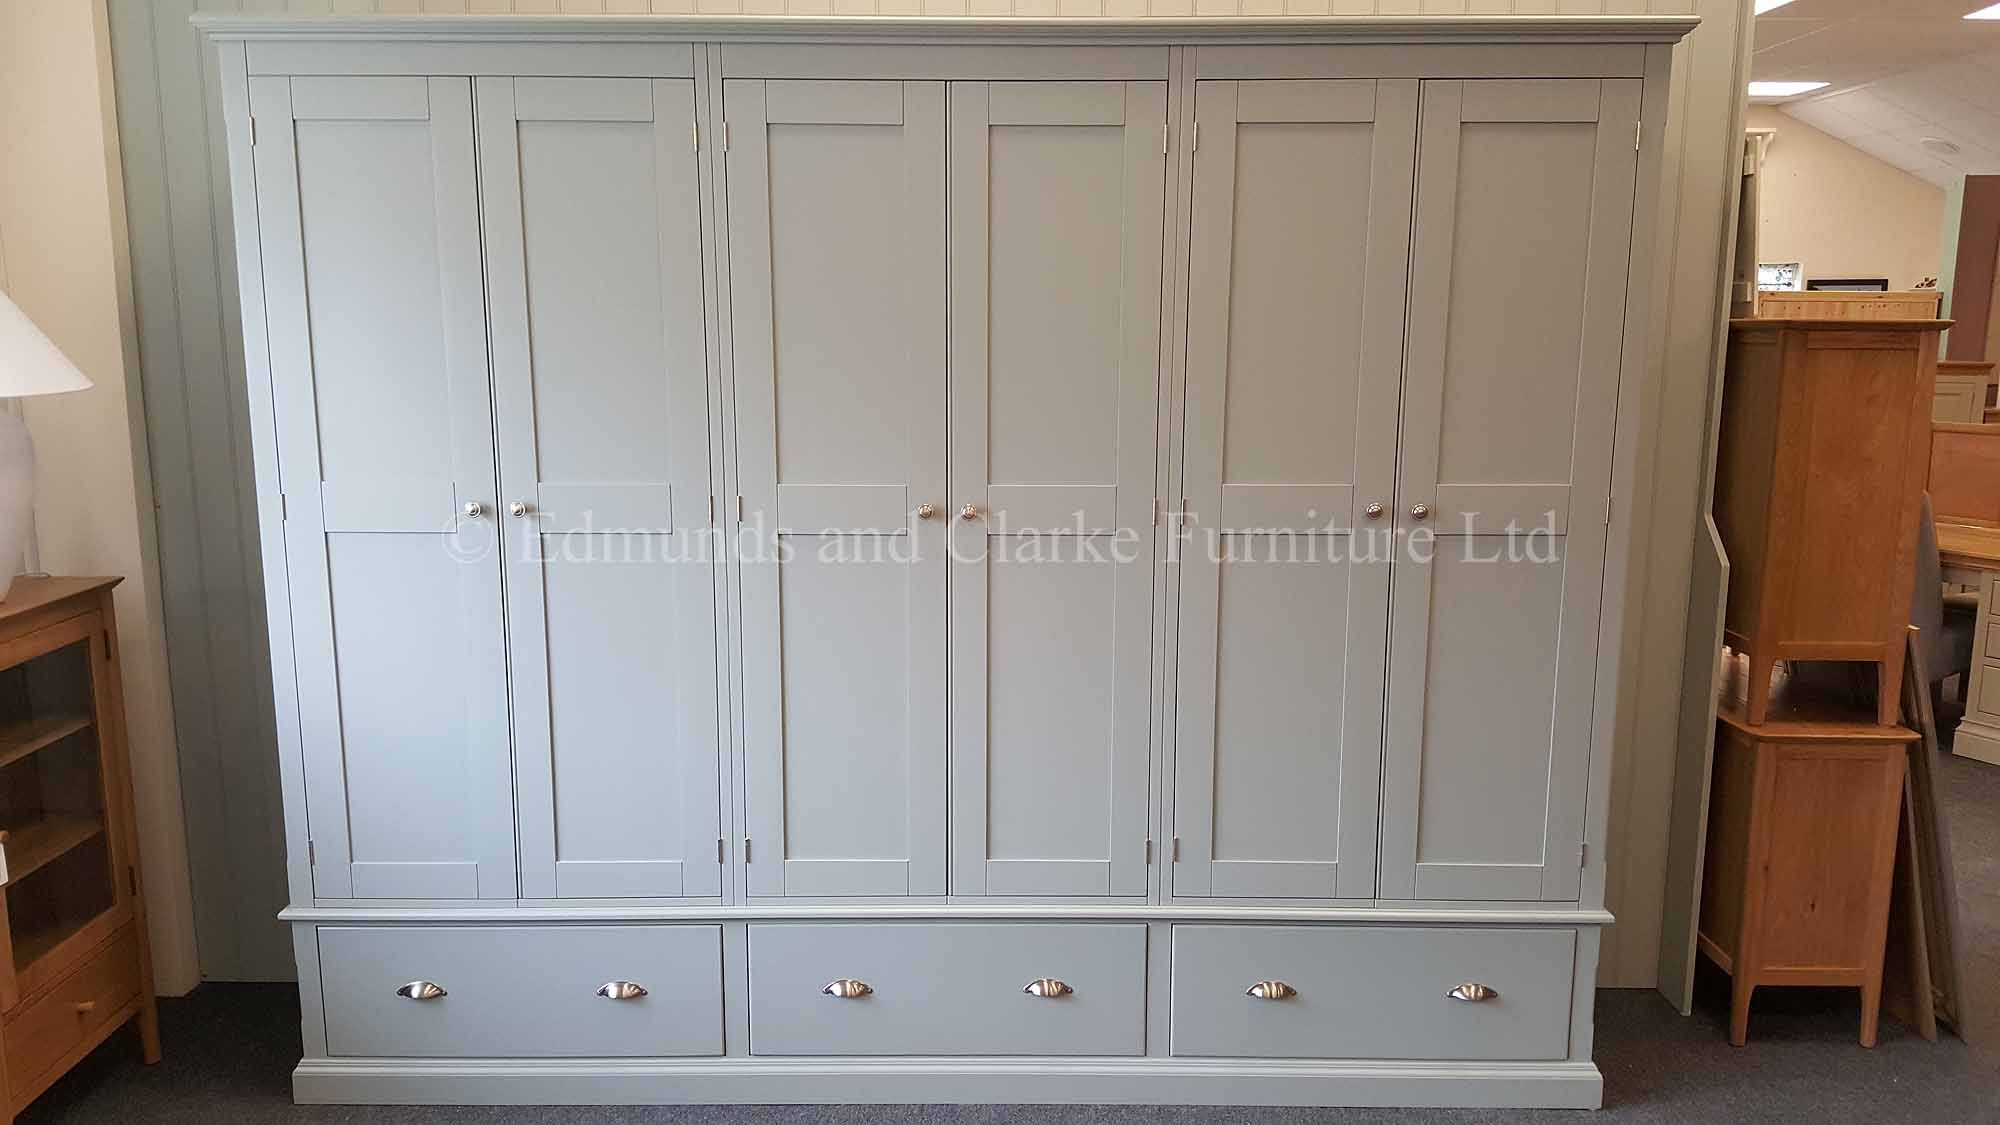 Bespoke 6 Door Wardrobe | Edmunds & Clarke Furniture Ltd With 6 Doors Wardrobes (View 14 of 15)